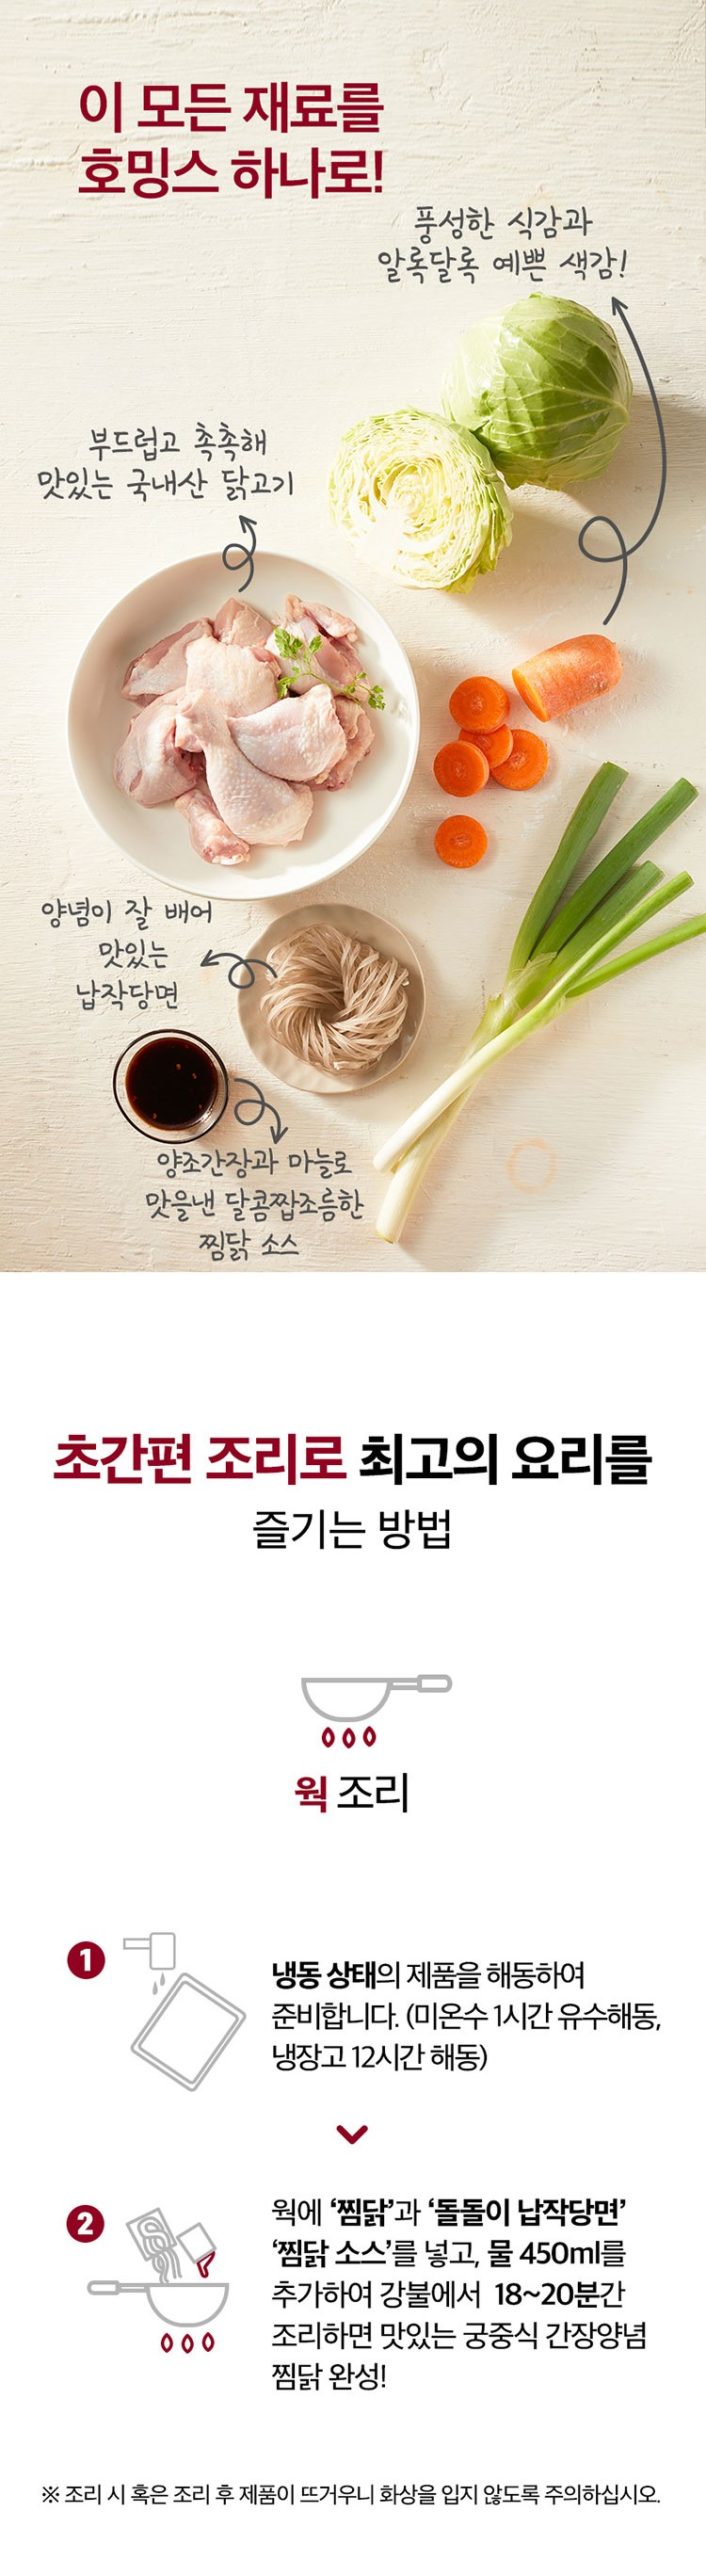 韓國食品-[CJO] Home:ings Andong-style Braised Spicy Chicken 670g